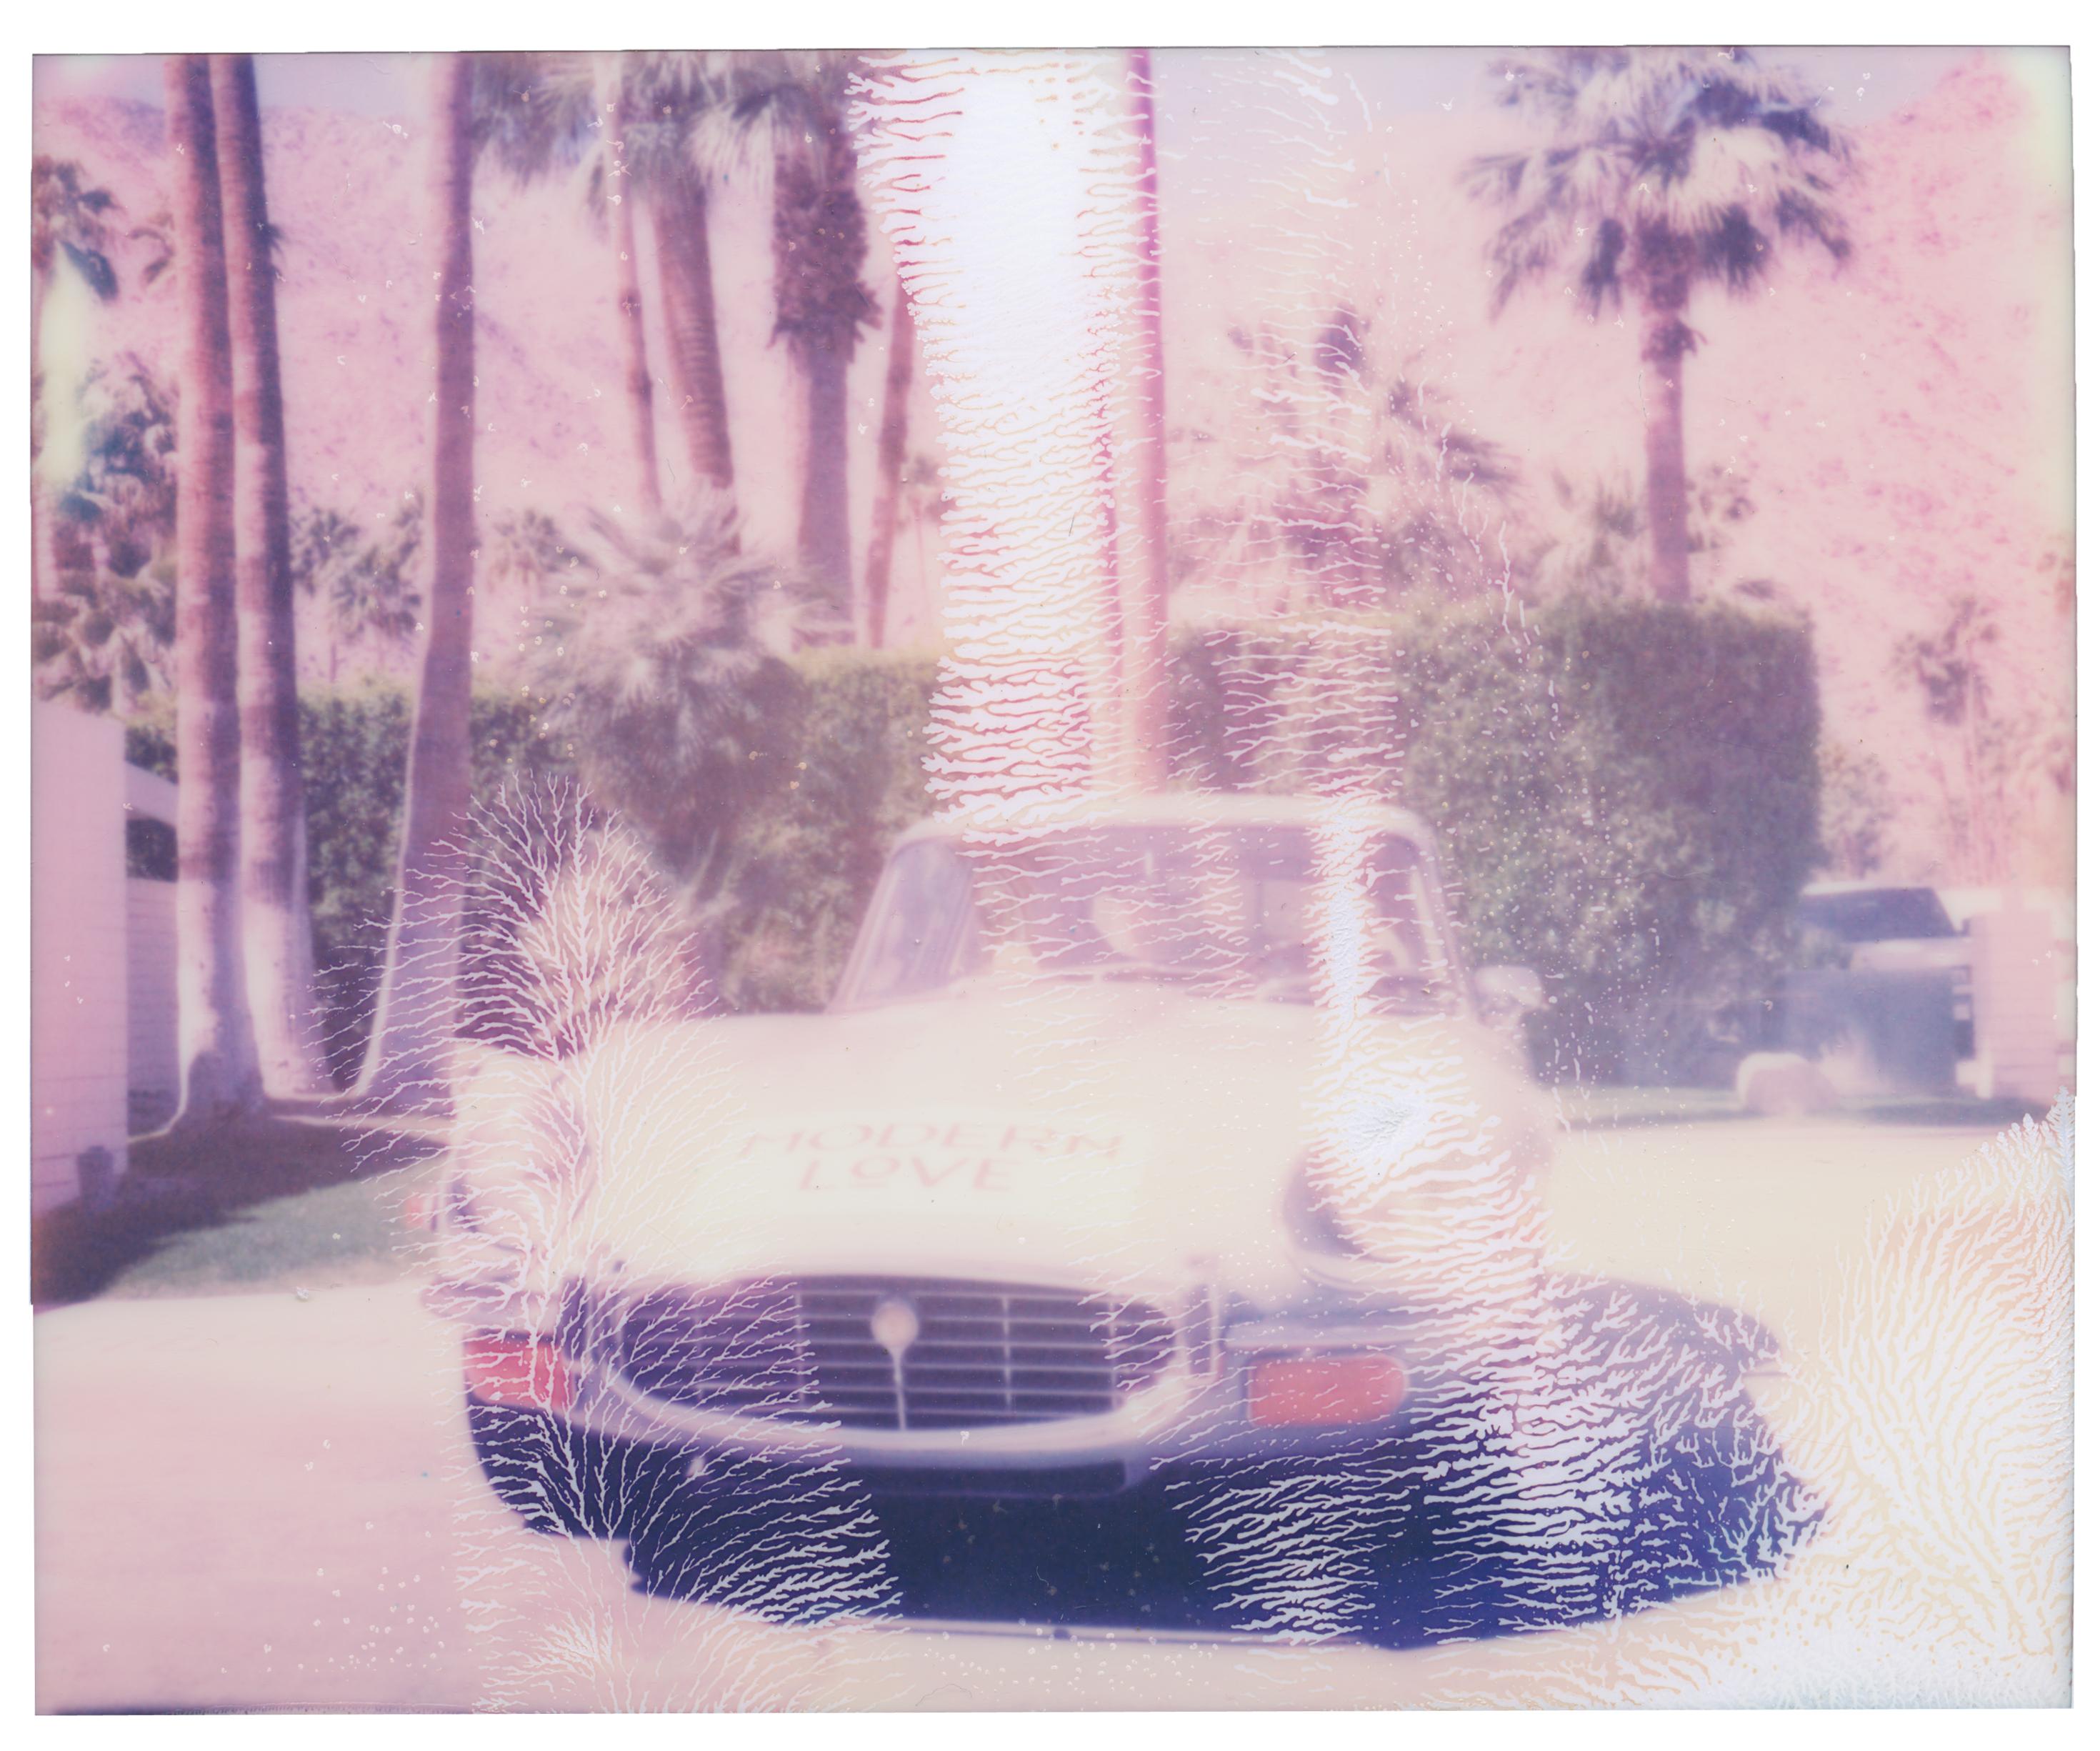 Landscape Photograph Stefanie Schneider - Palm Springs E-Type Abstract (Californication) - Polaroid, Jaguar, vintage